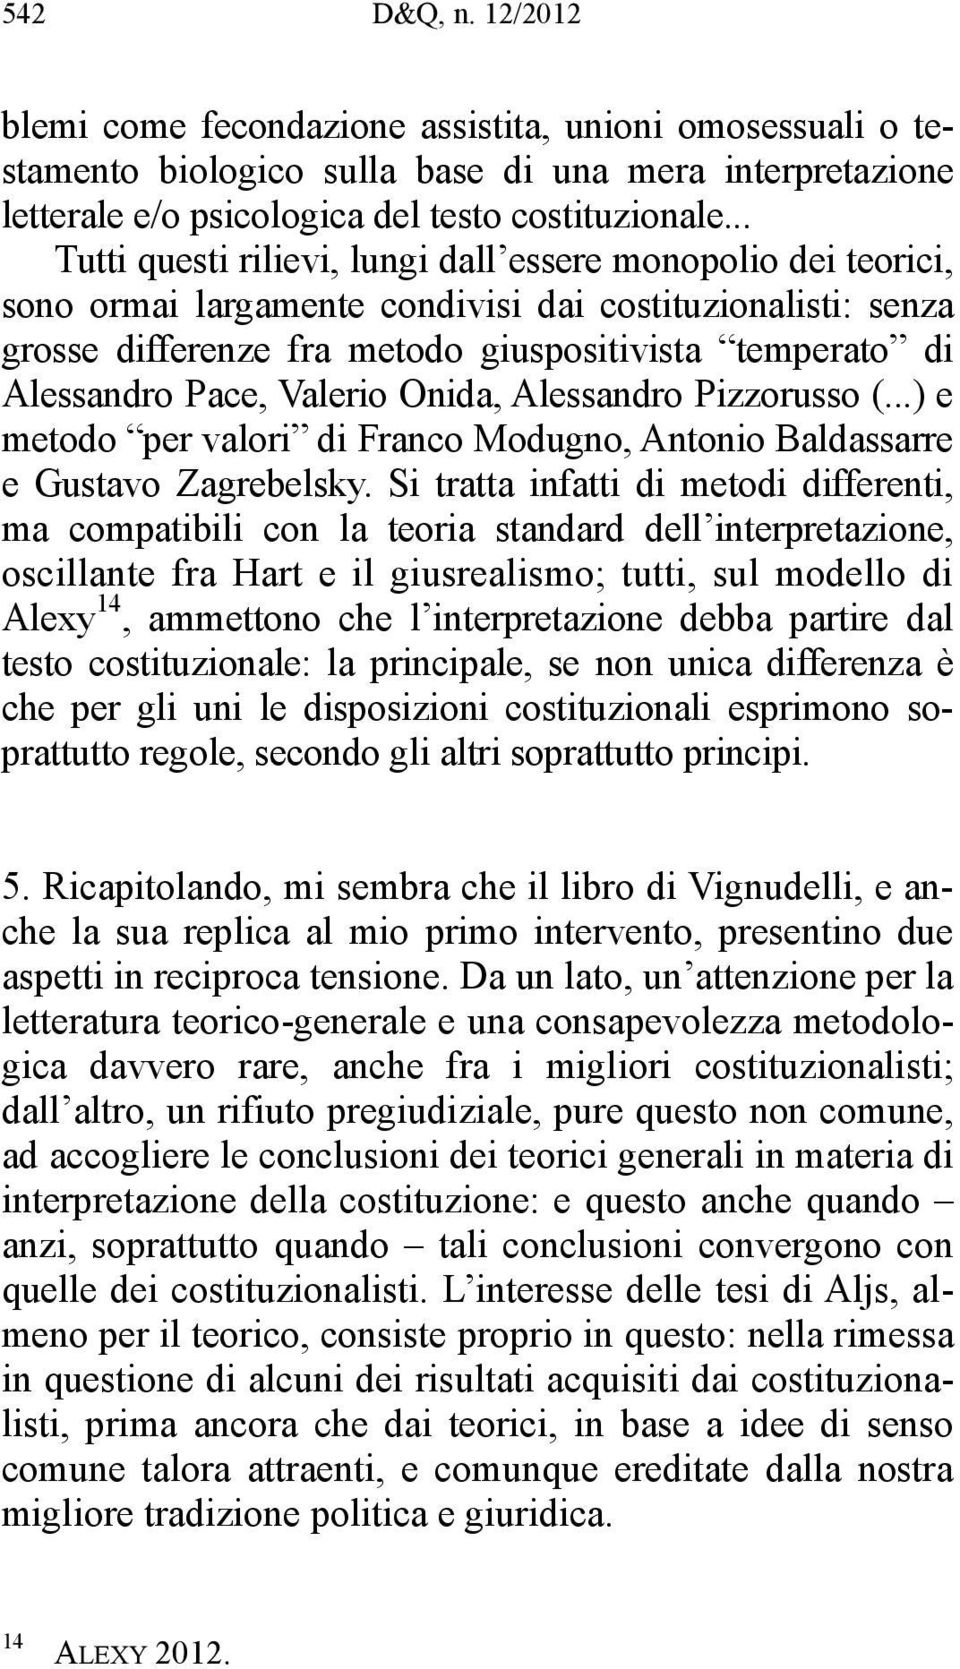 Pace, Valerio Onida, Alessandro Pizzorusso (...) e metodo per valori di Franco Modugno, Antonio Baldassarre e Gustavo Zagrebelsky.